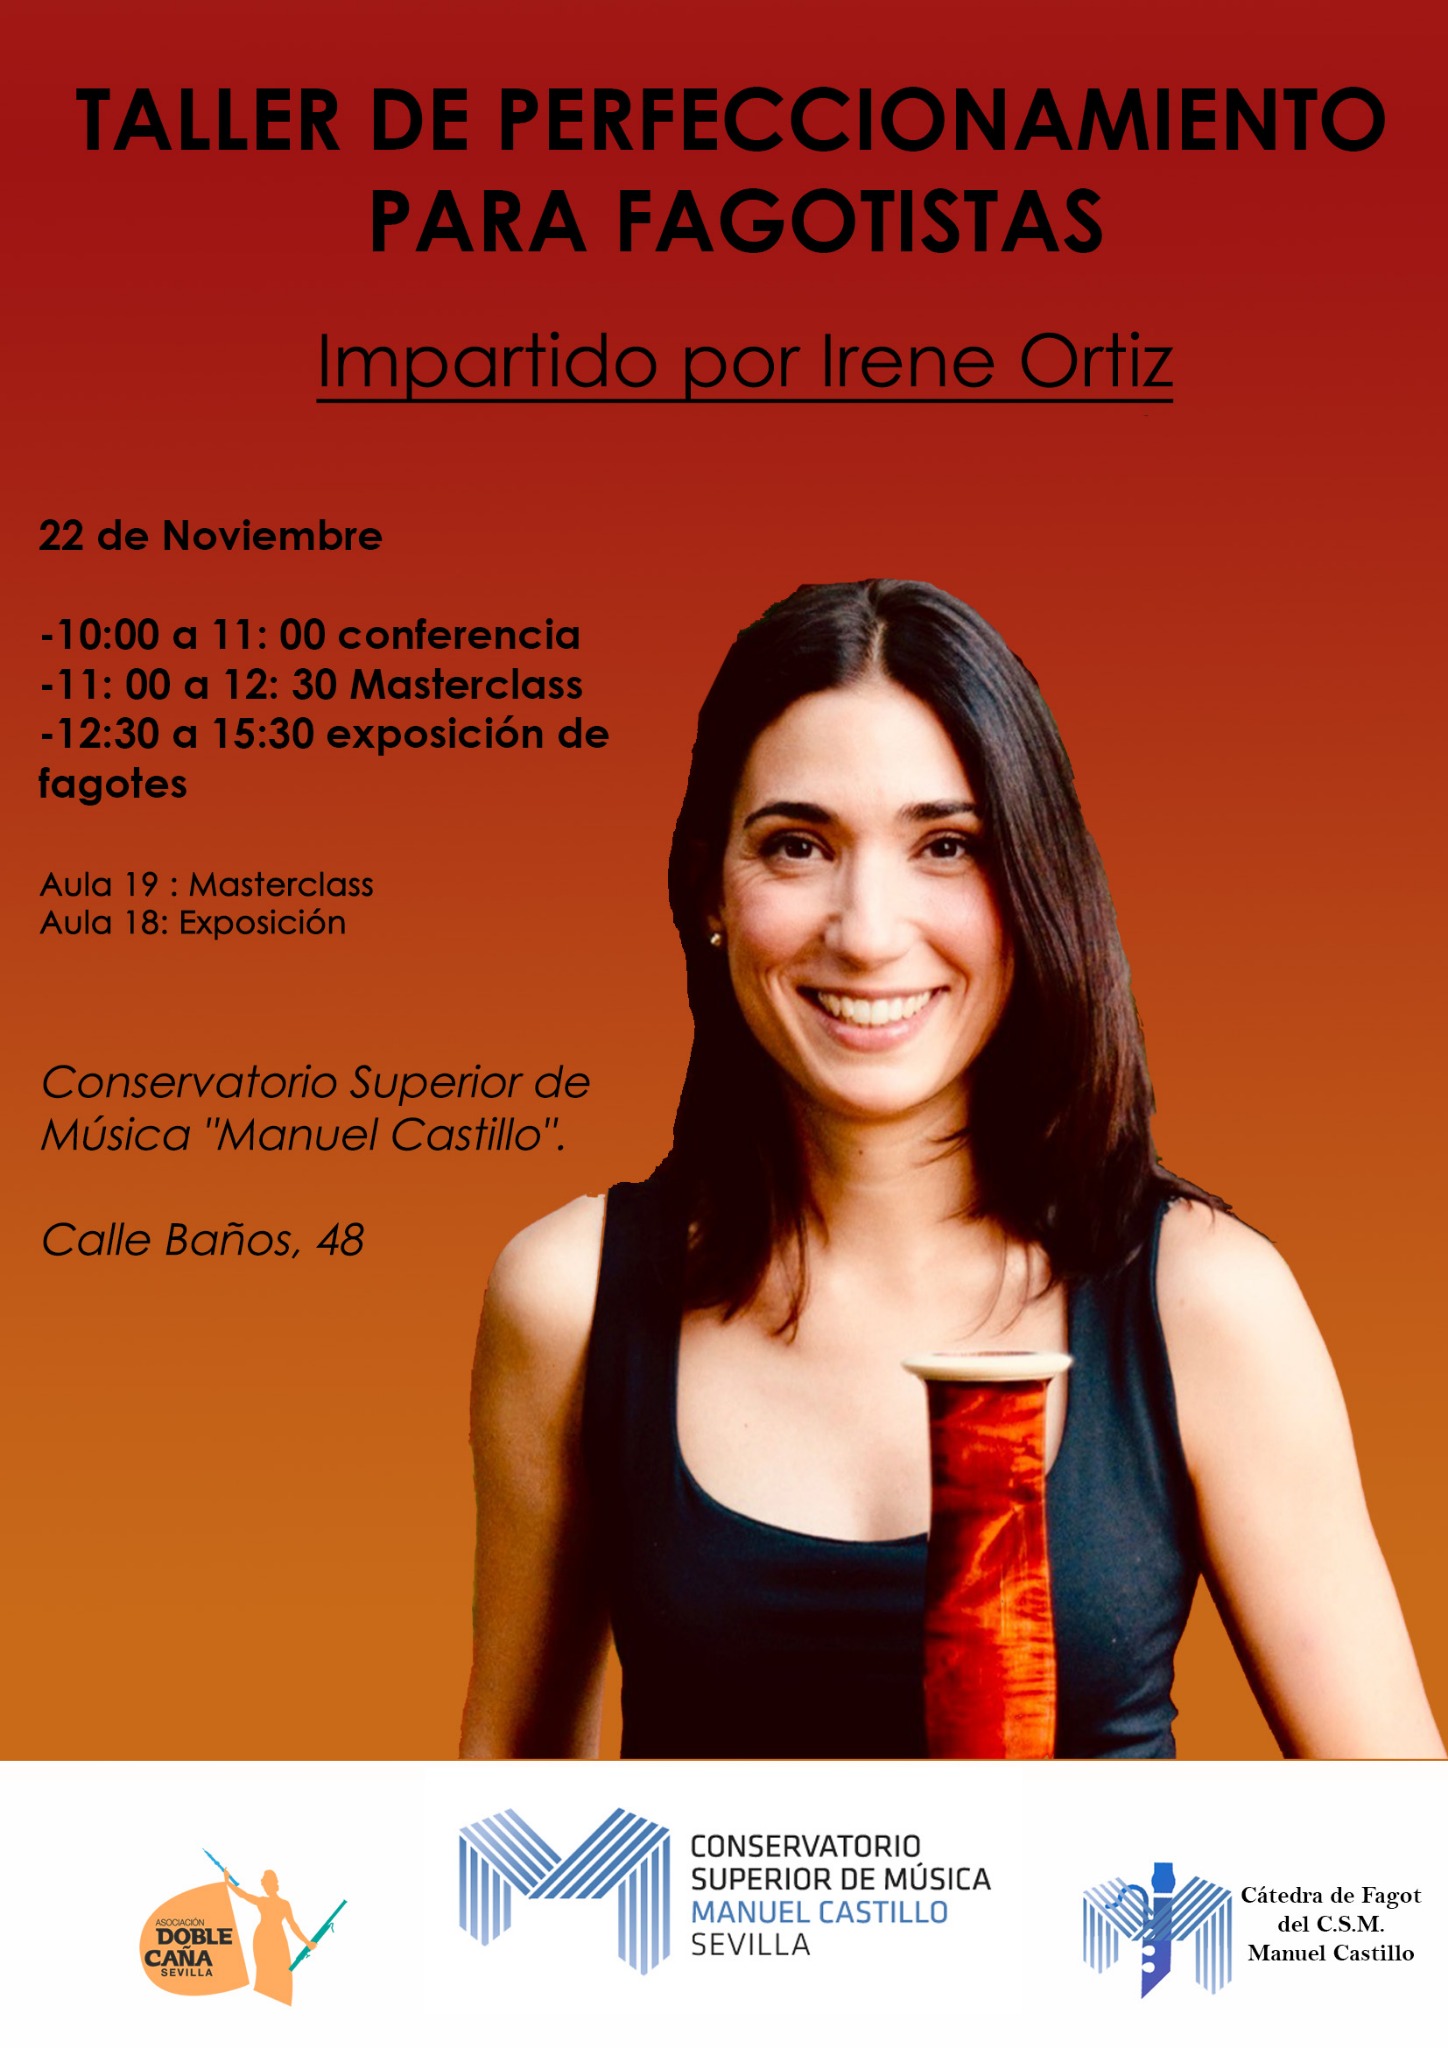 Irene Ortiz